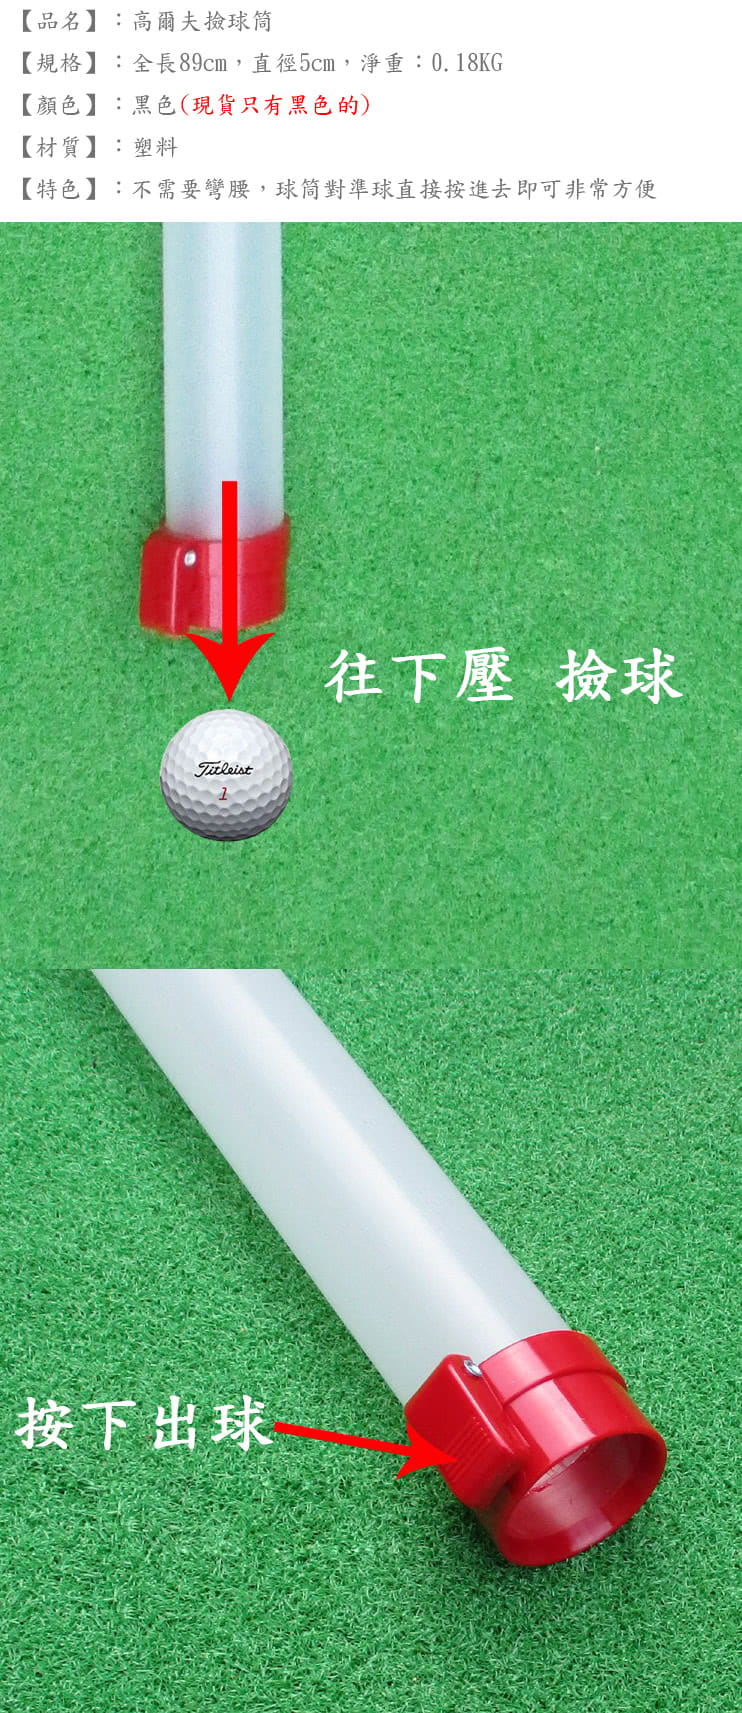 【LOTUS】高爾夫 21顆裝撿球筒 1